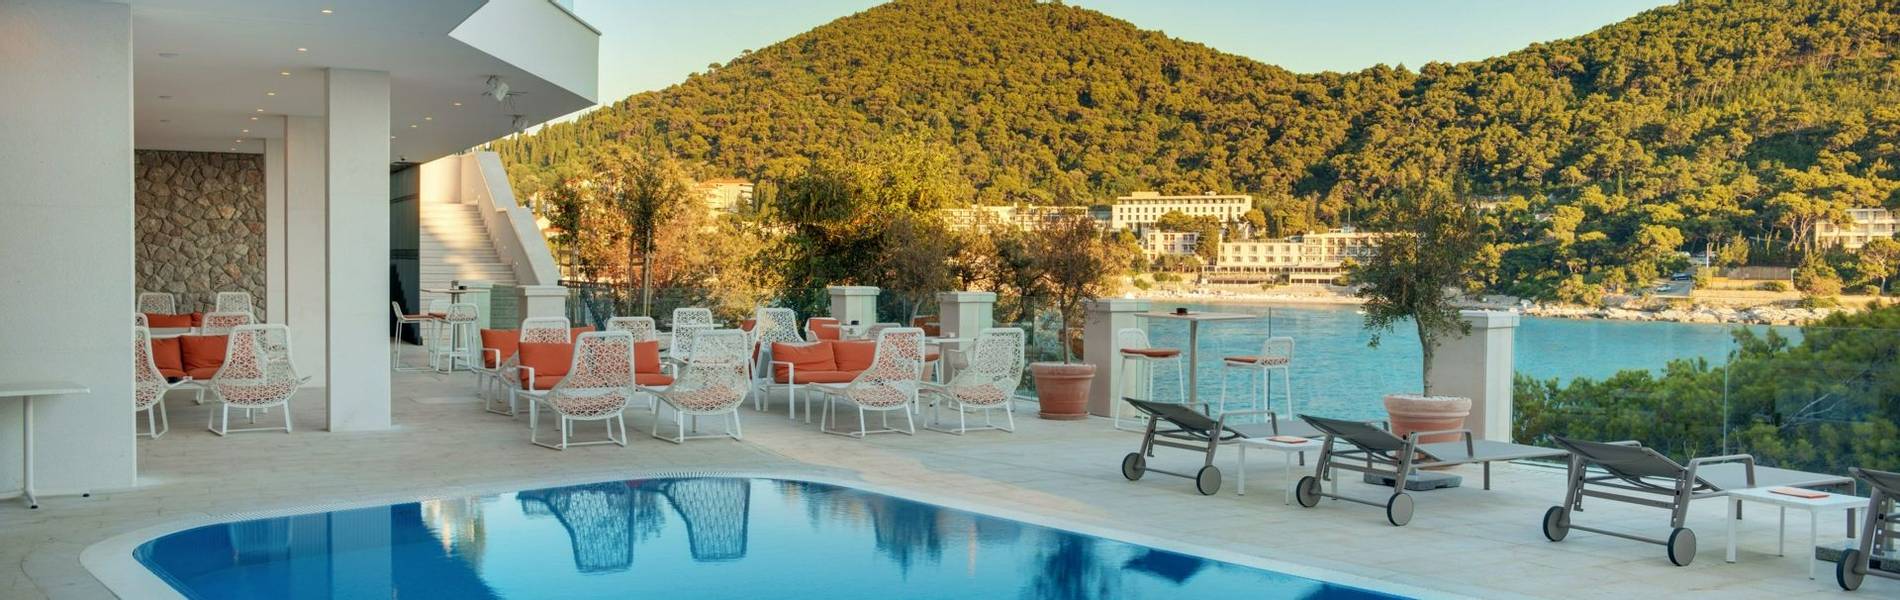 Hotel More, Dubrovnik, Croatia (56).jpg